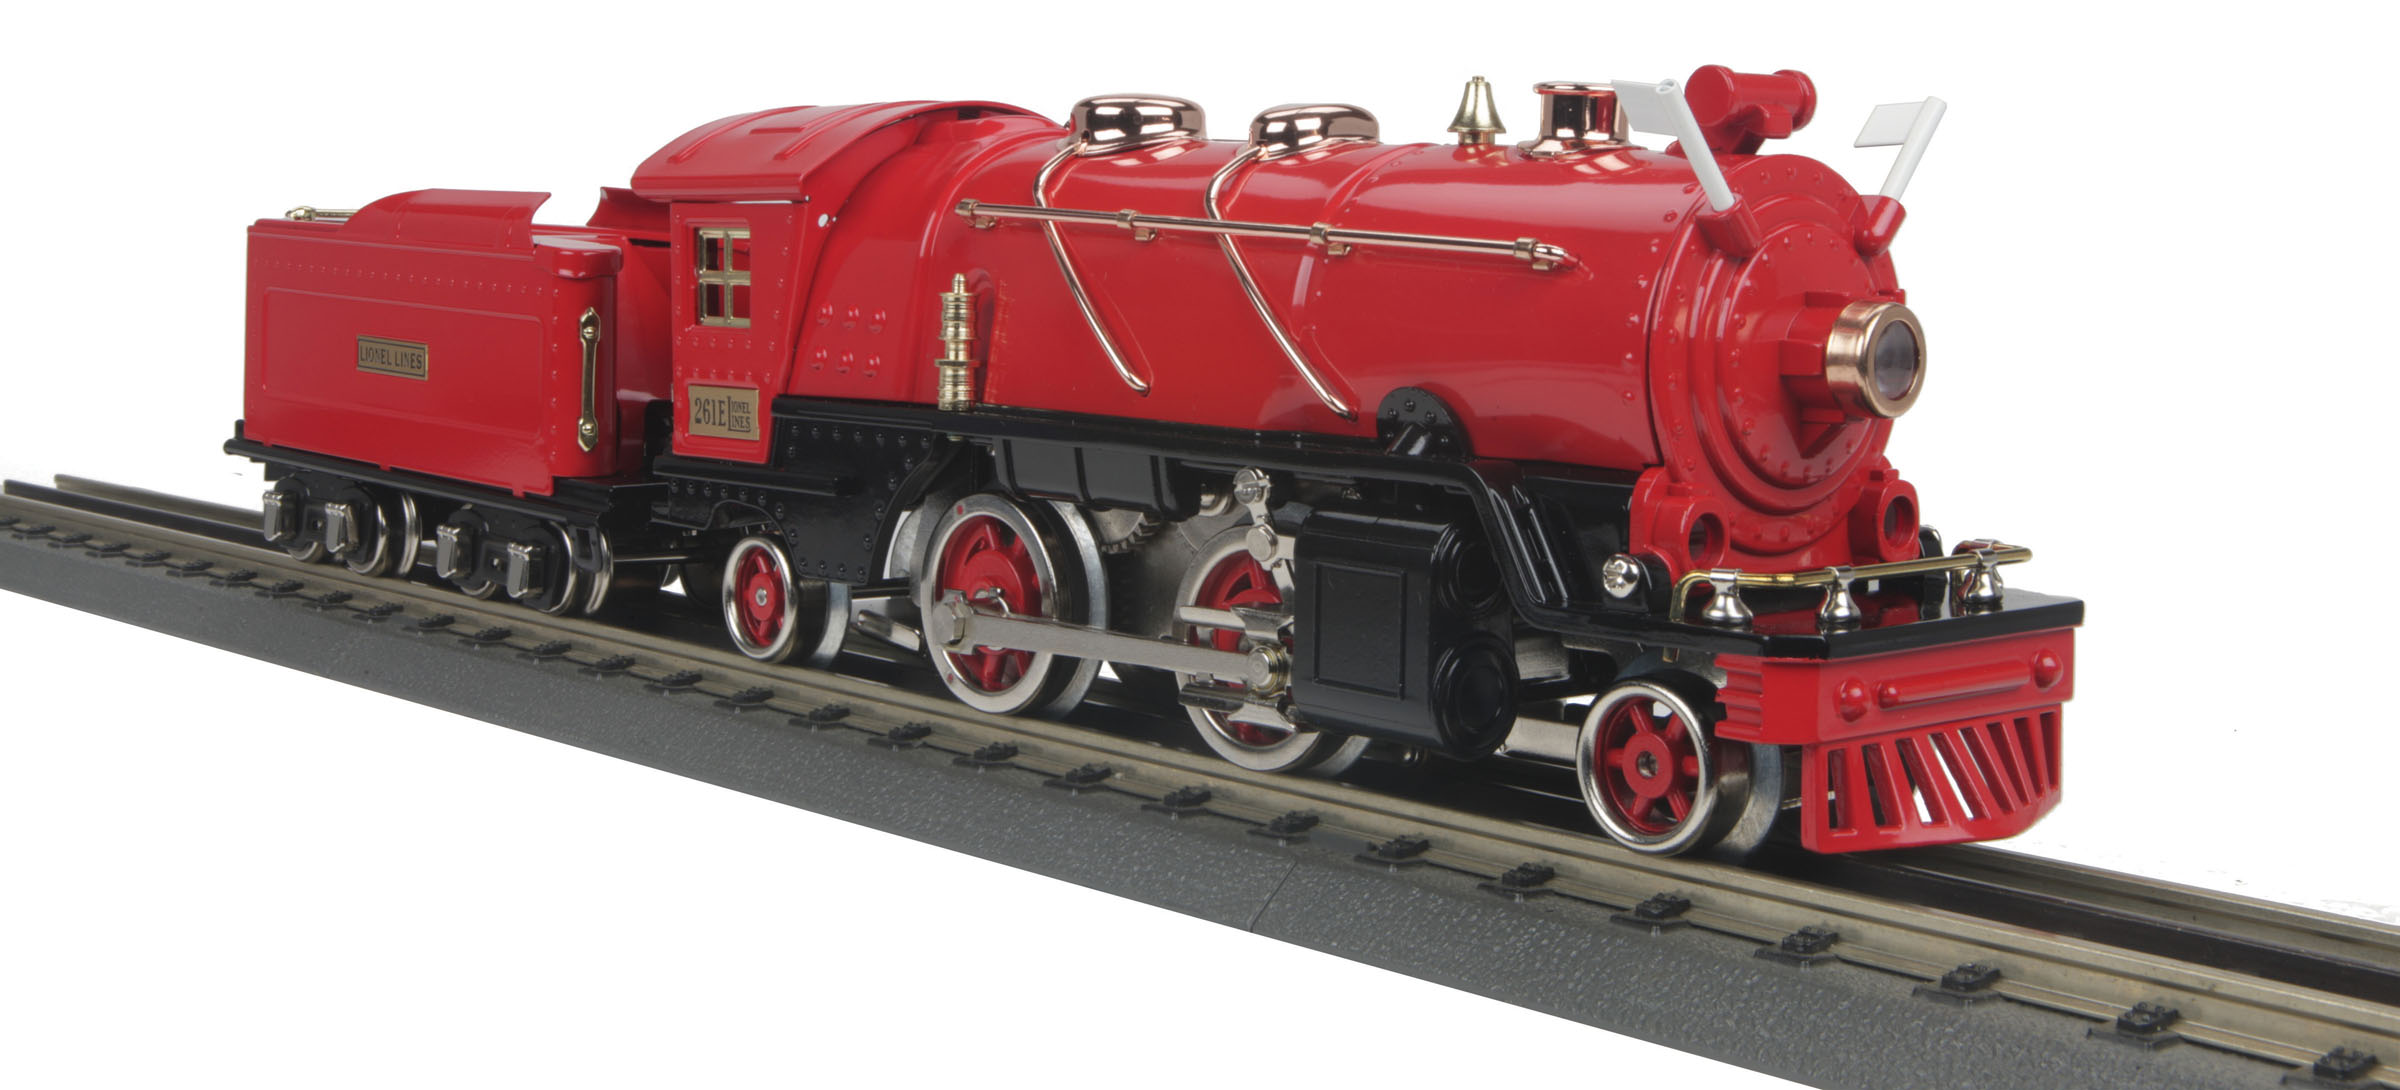 red steam train